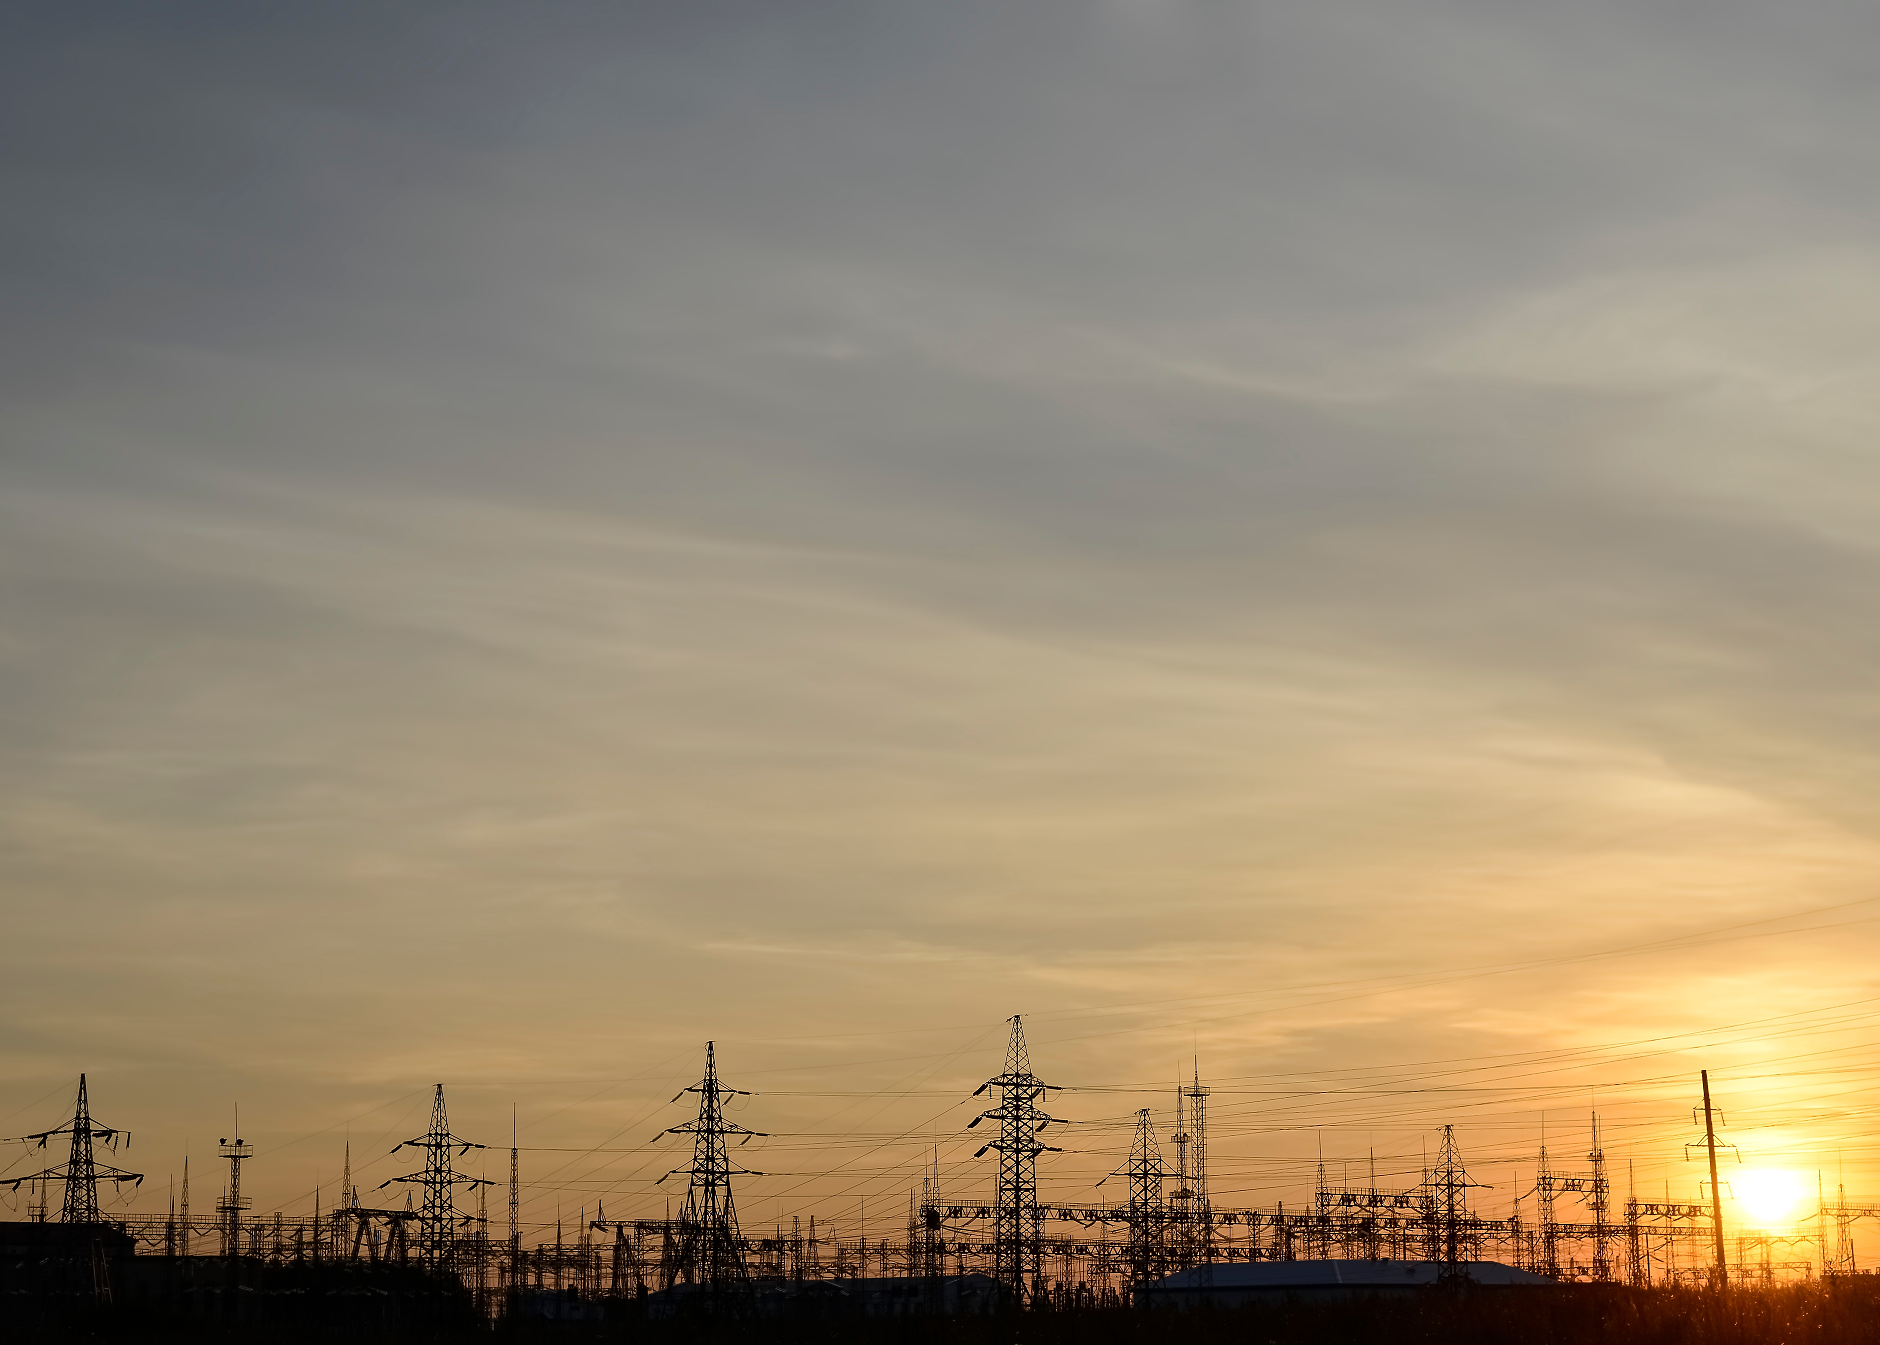 Енергийното министерство пита фирмите за ефекта от компенсациите за скъпия ток 